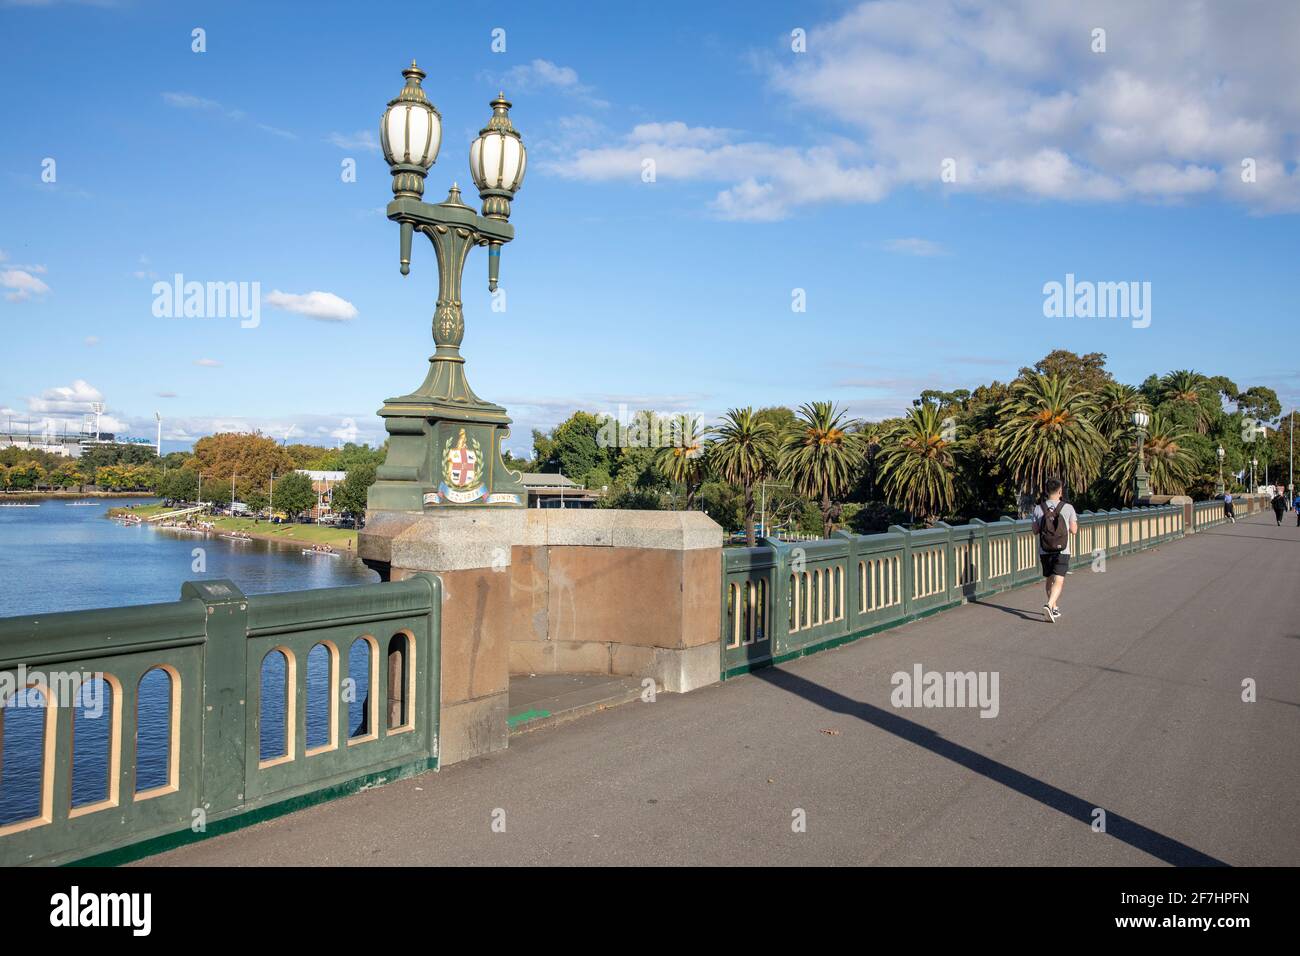 Princes bridge over the Yarra river in Melbourne city centre,Victoria,Australia Stock Photo